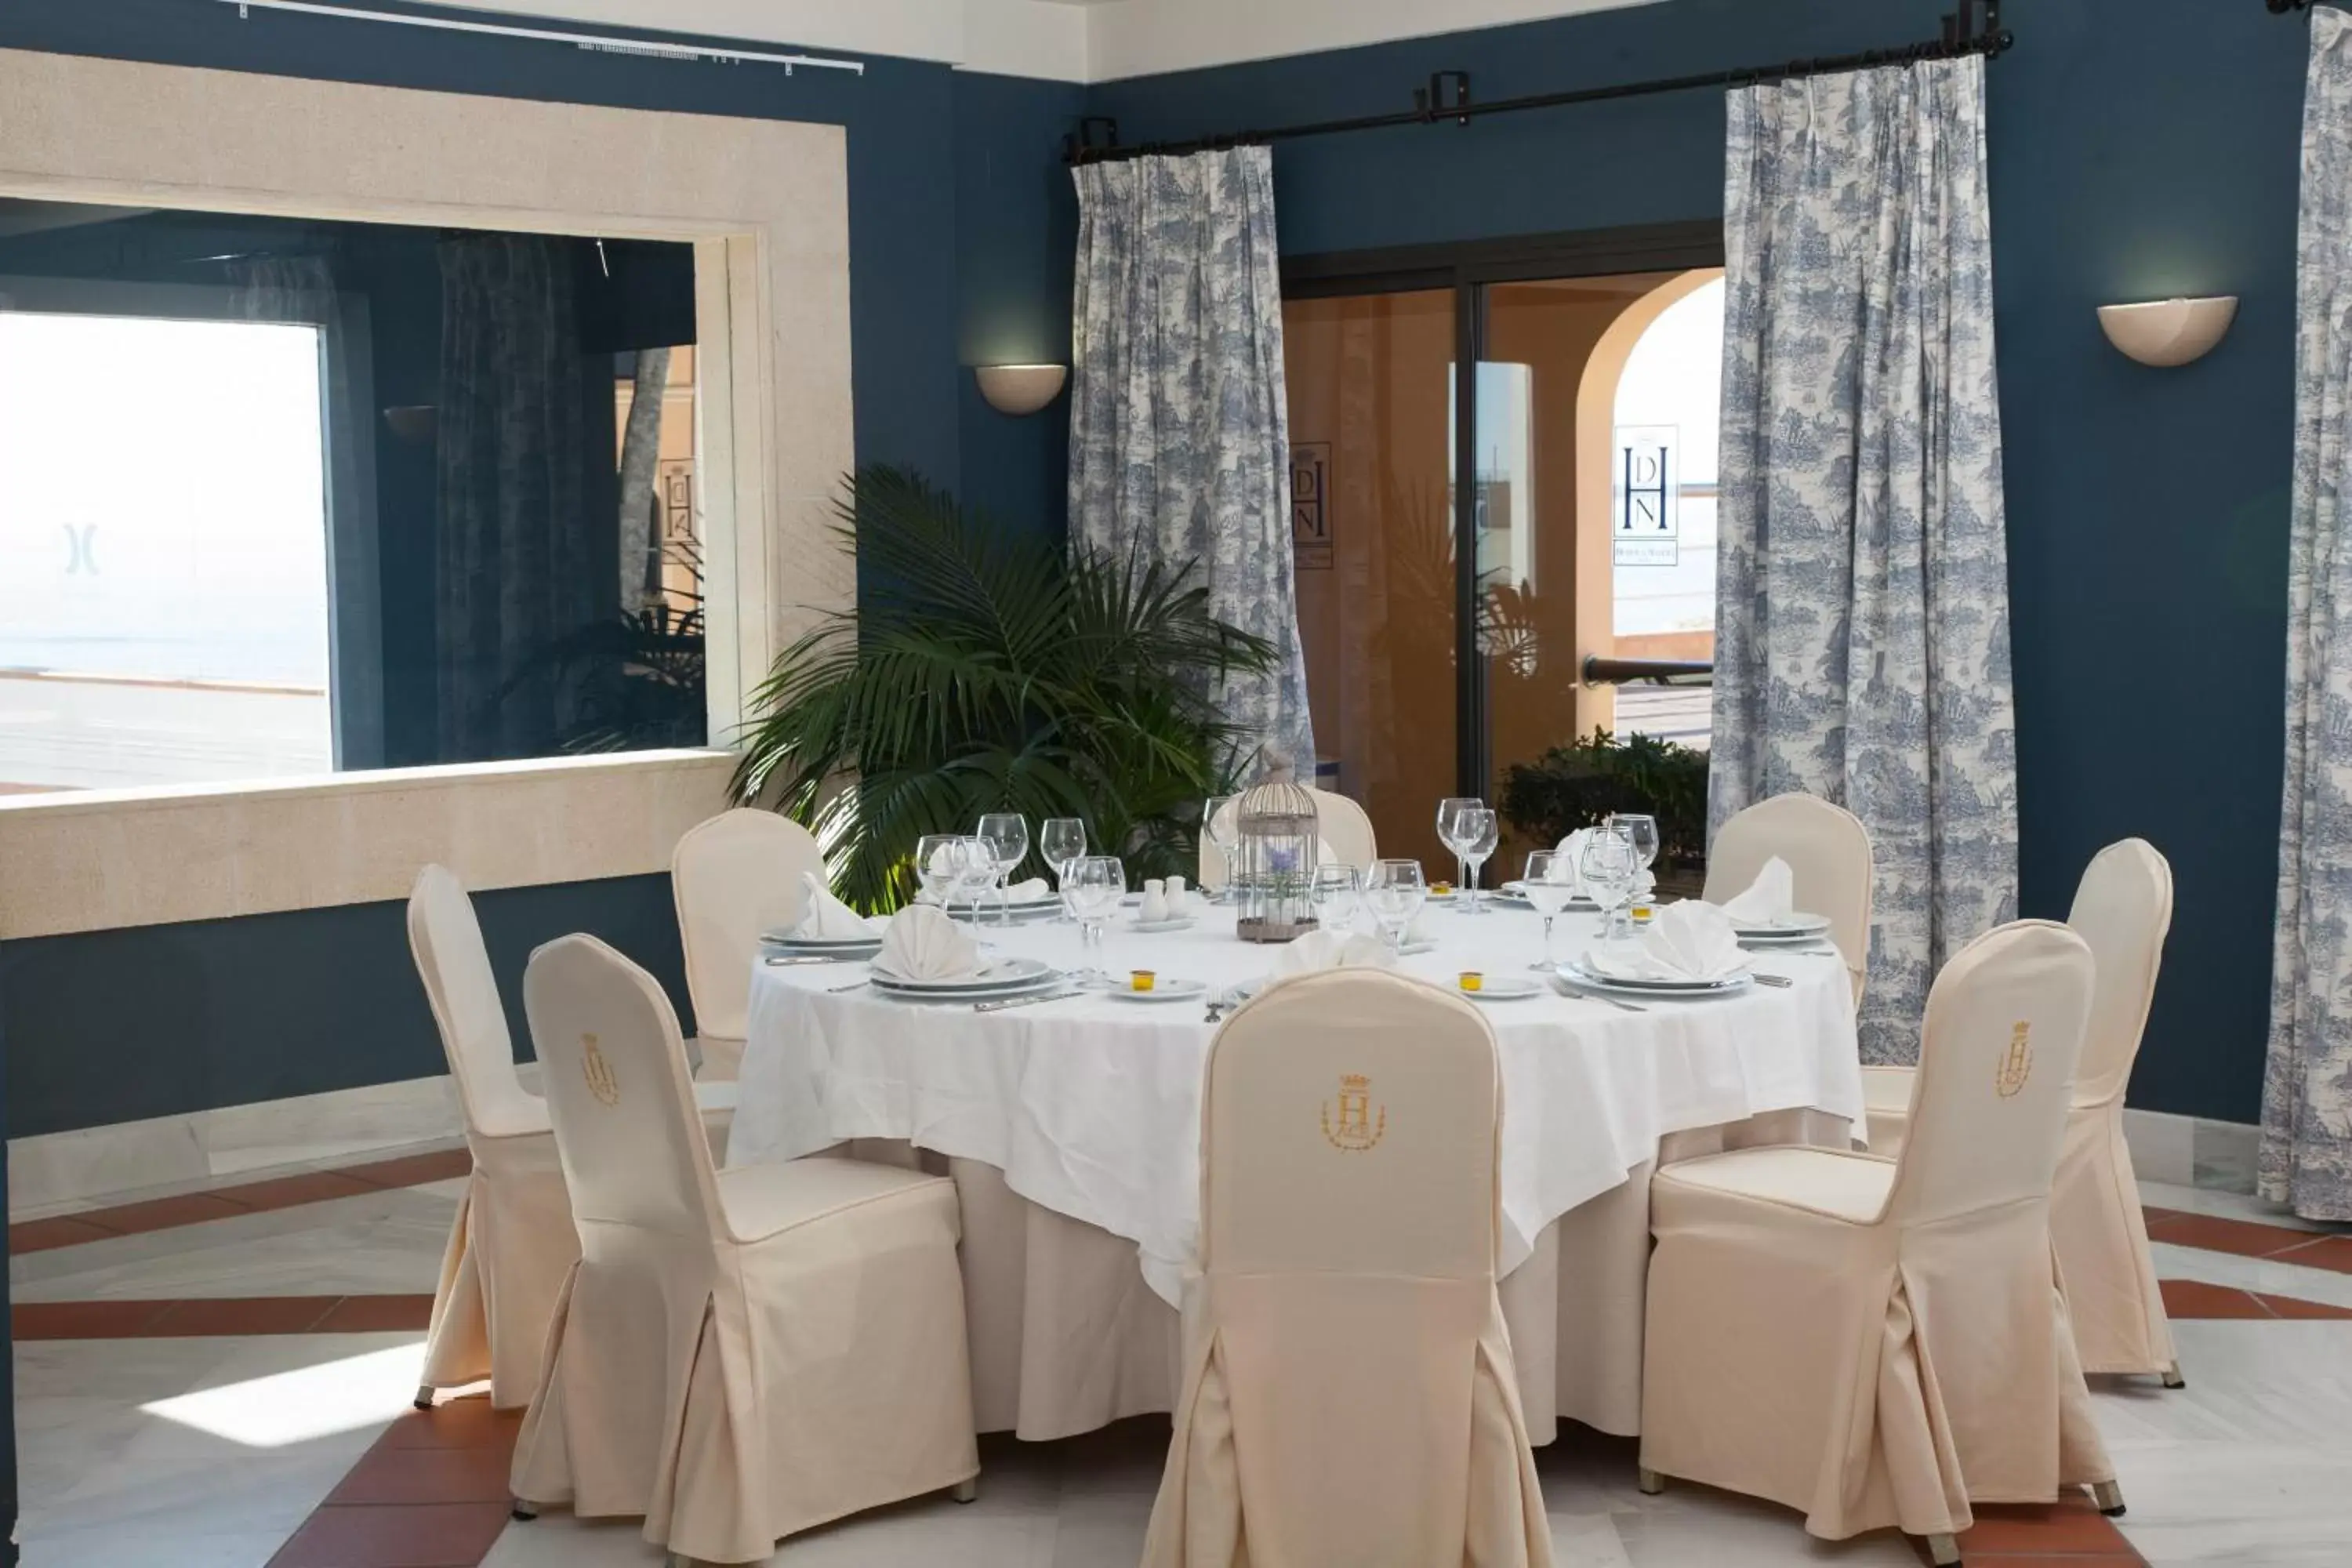 Banquet/Function facilities, Banquet Facilities in Hotel Duque de Najera